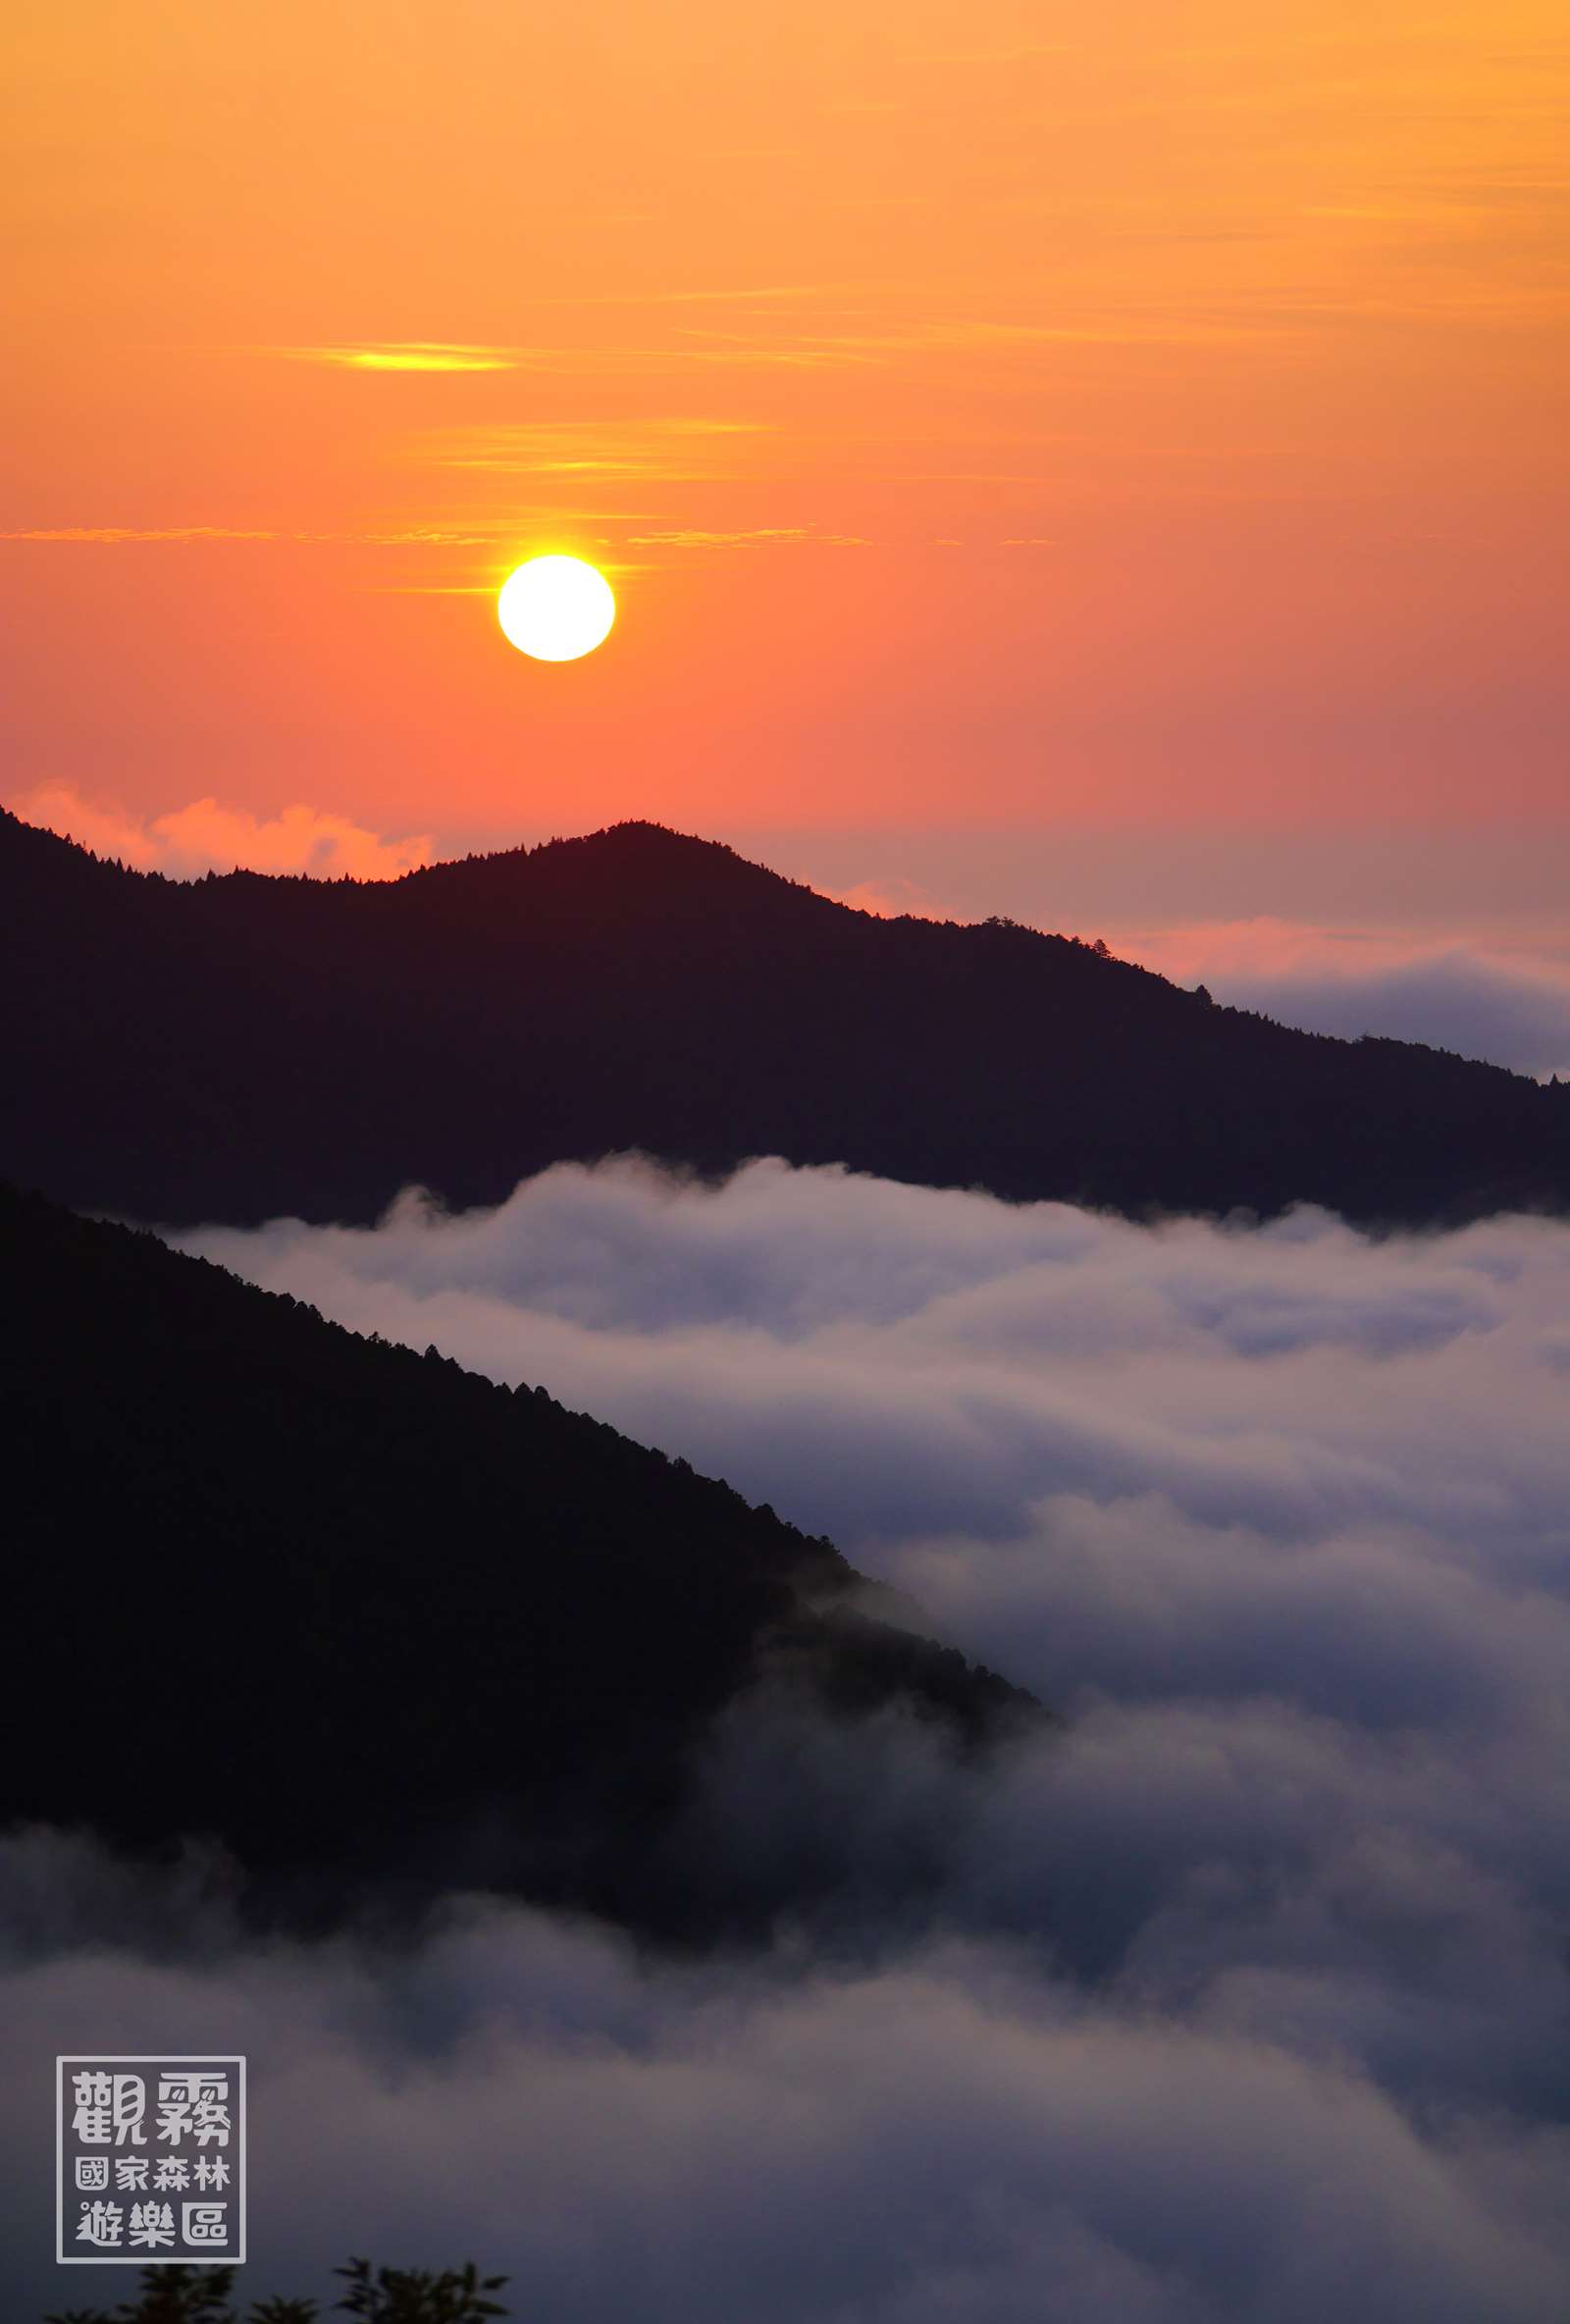 「觀霧」主題：展現在觀霧迷人的雲海及雲霧景緻；觀霧爺巴堪溪雲海與夕陽，令人心醉神迷。